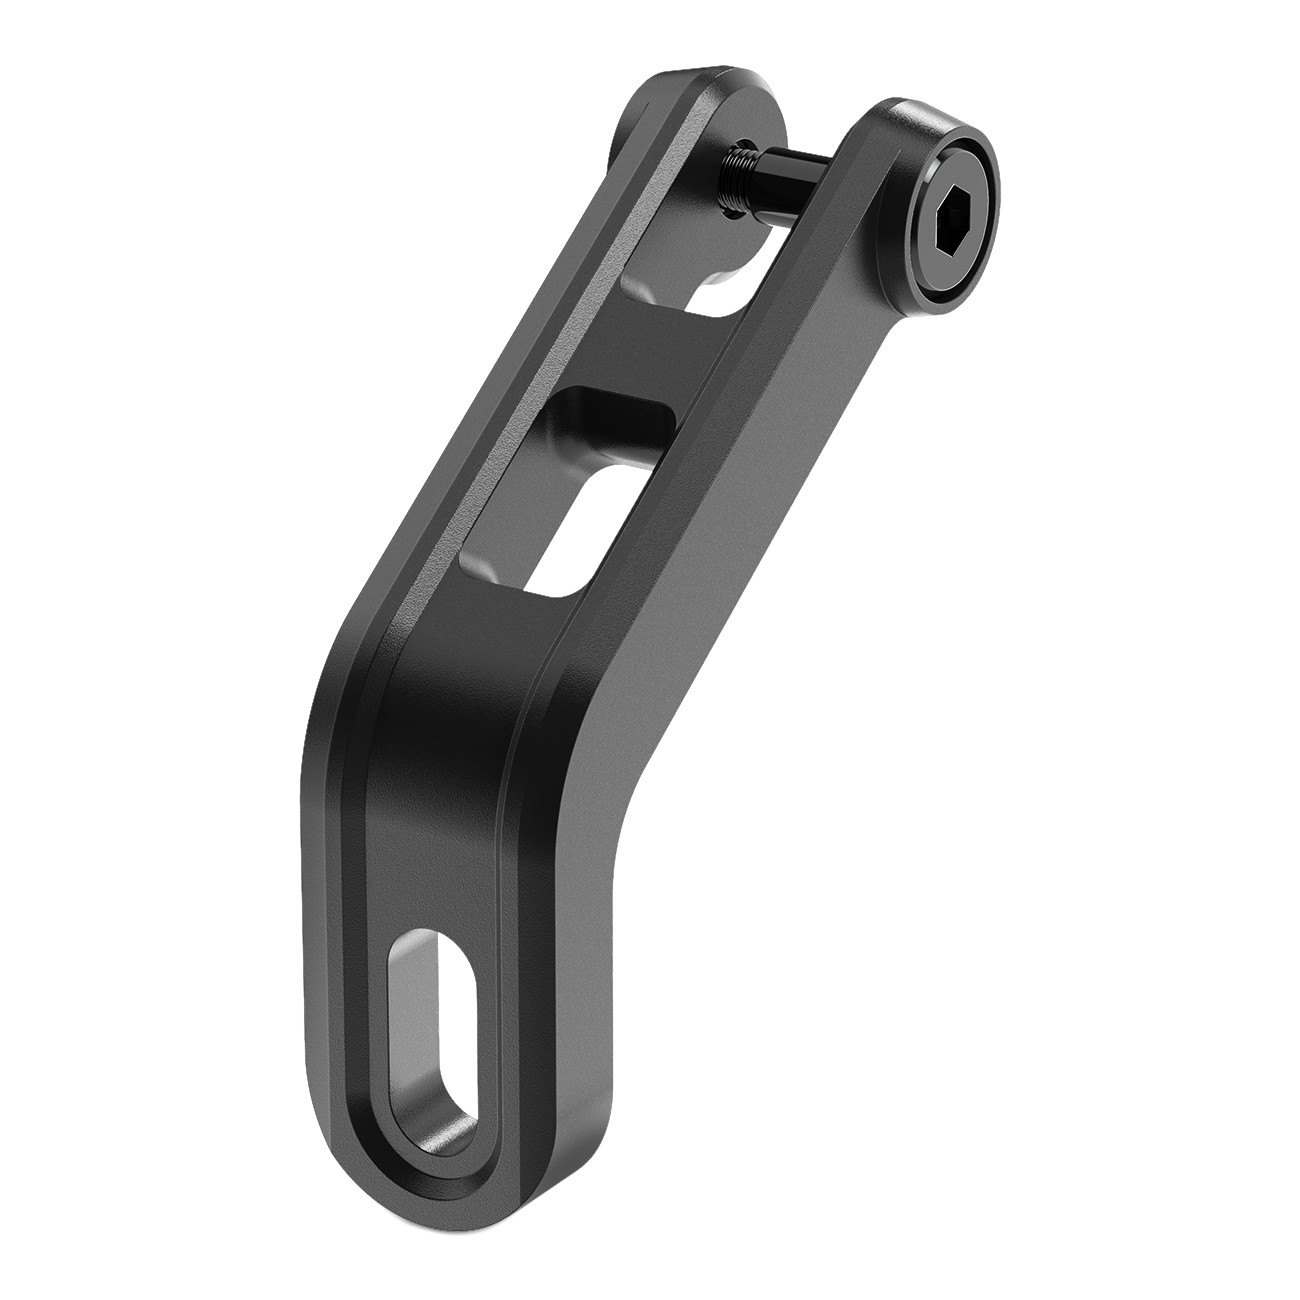 Productfoto van CUBE ACID HPP Universal Bracket for Front Light - Fork Mount - black